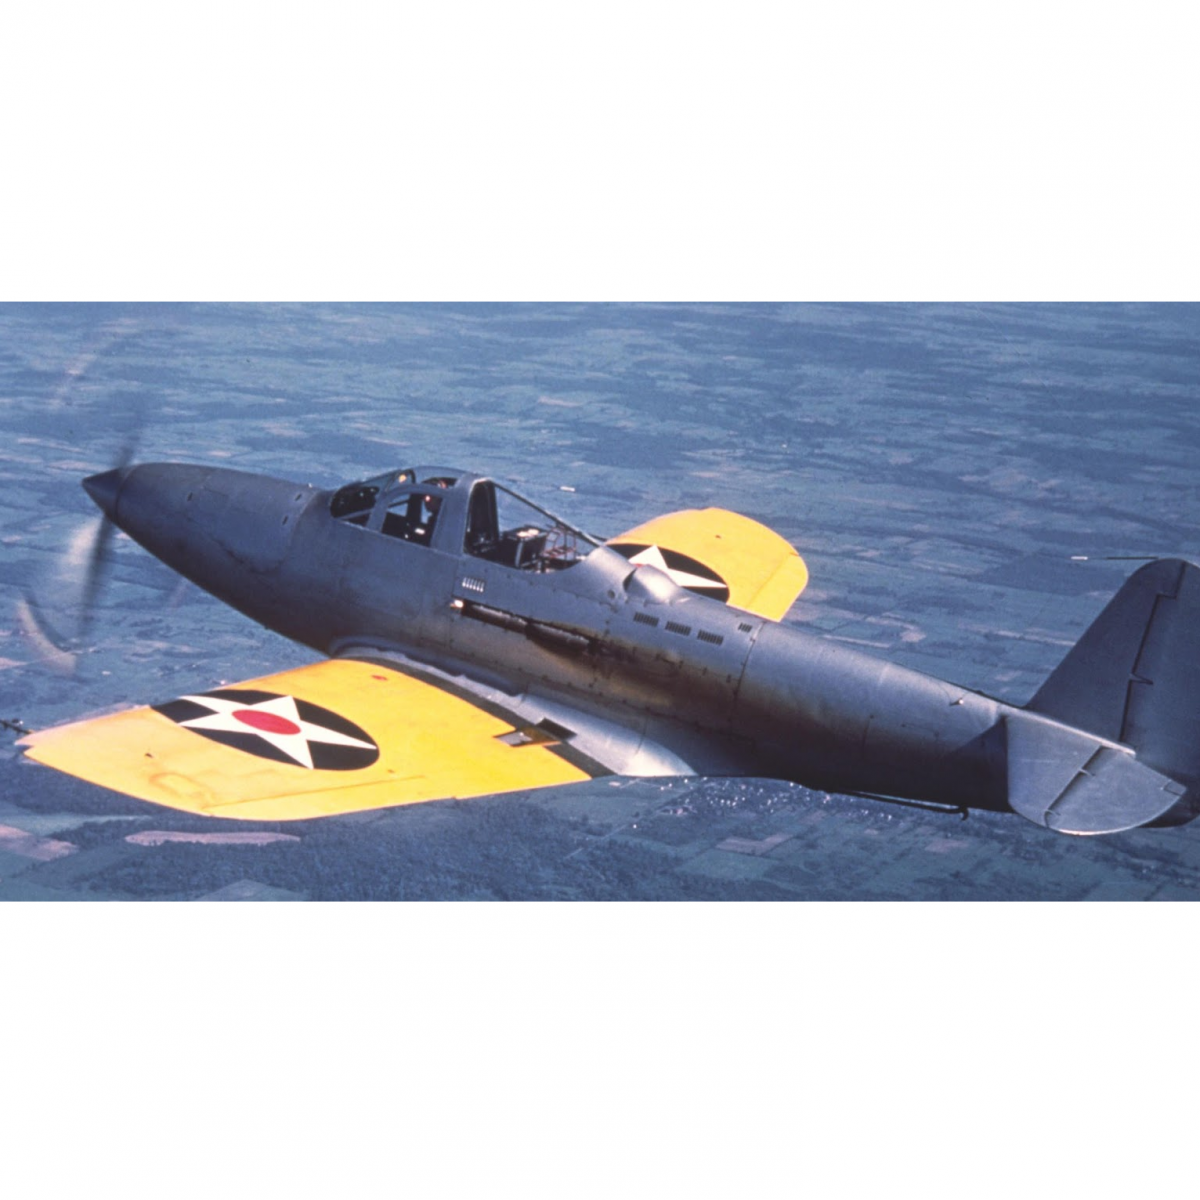 Опытный палубный истребитель Bell Model 5 XFL-1 Airabonita. США